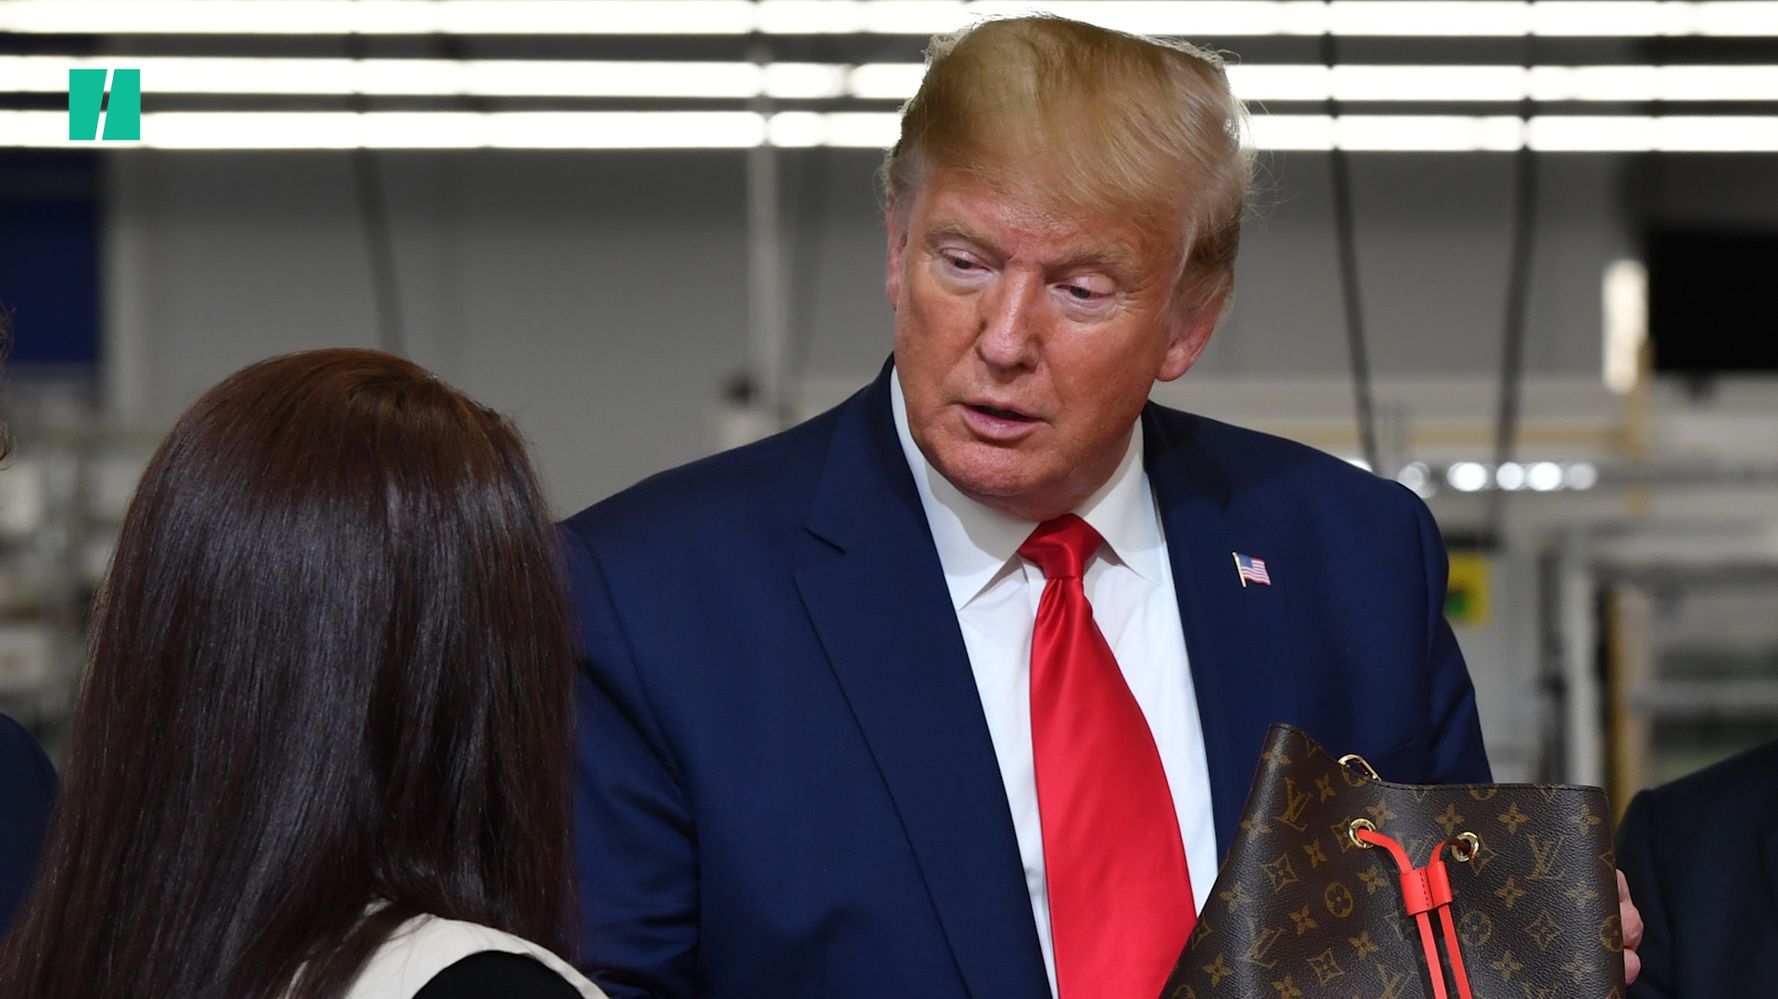 Louis Vuitton's Nicolas Ghesquière Criticizes Trump Visit